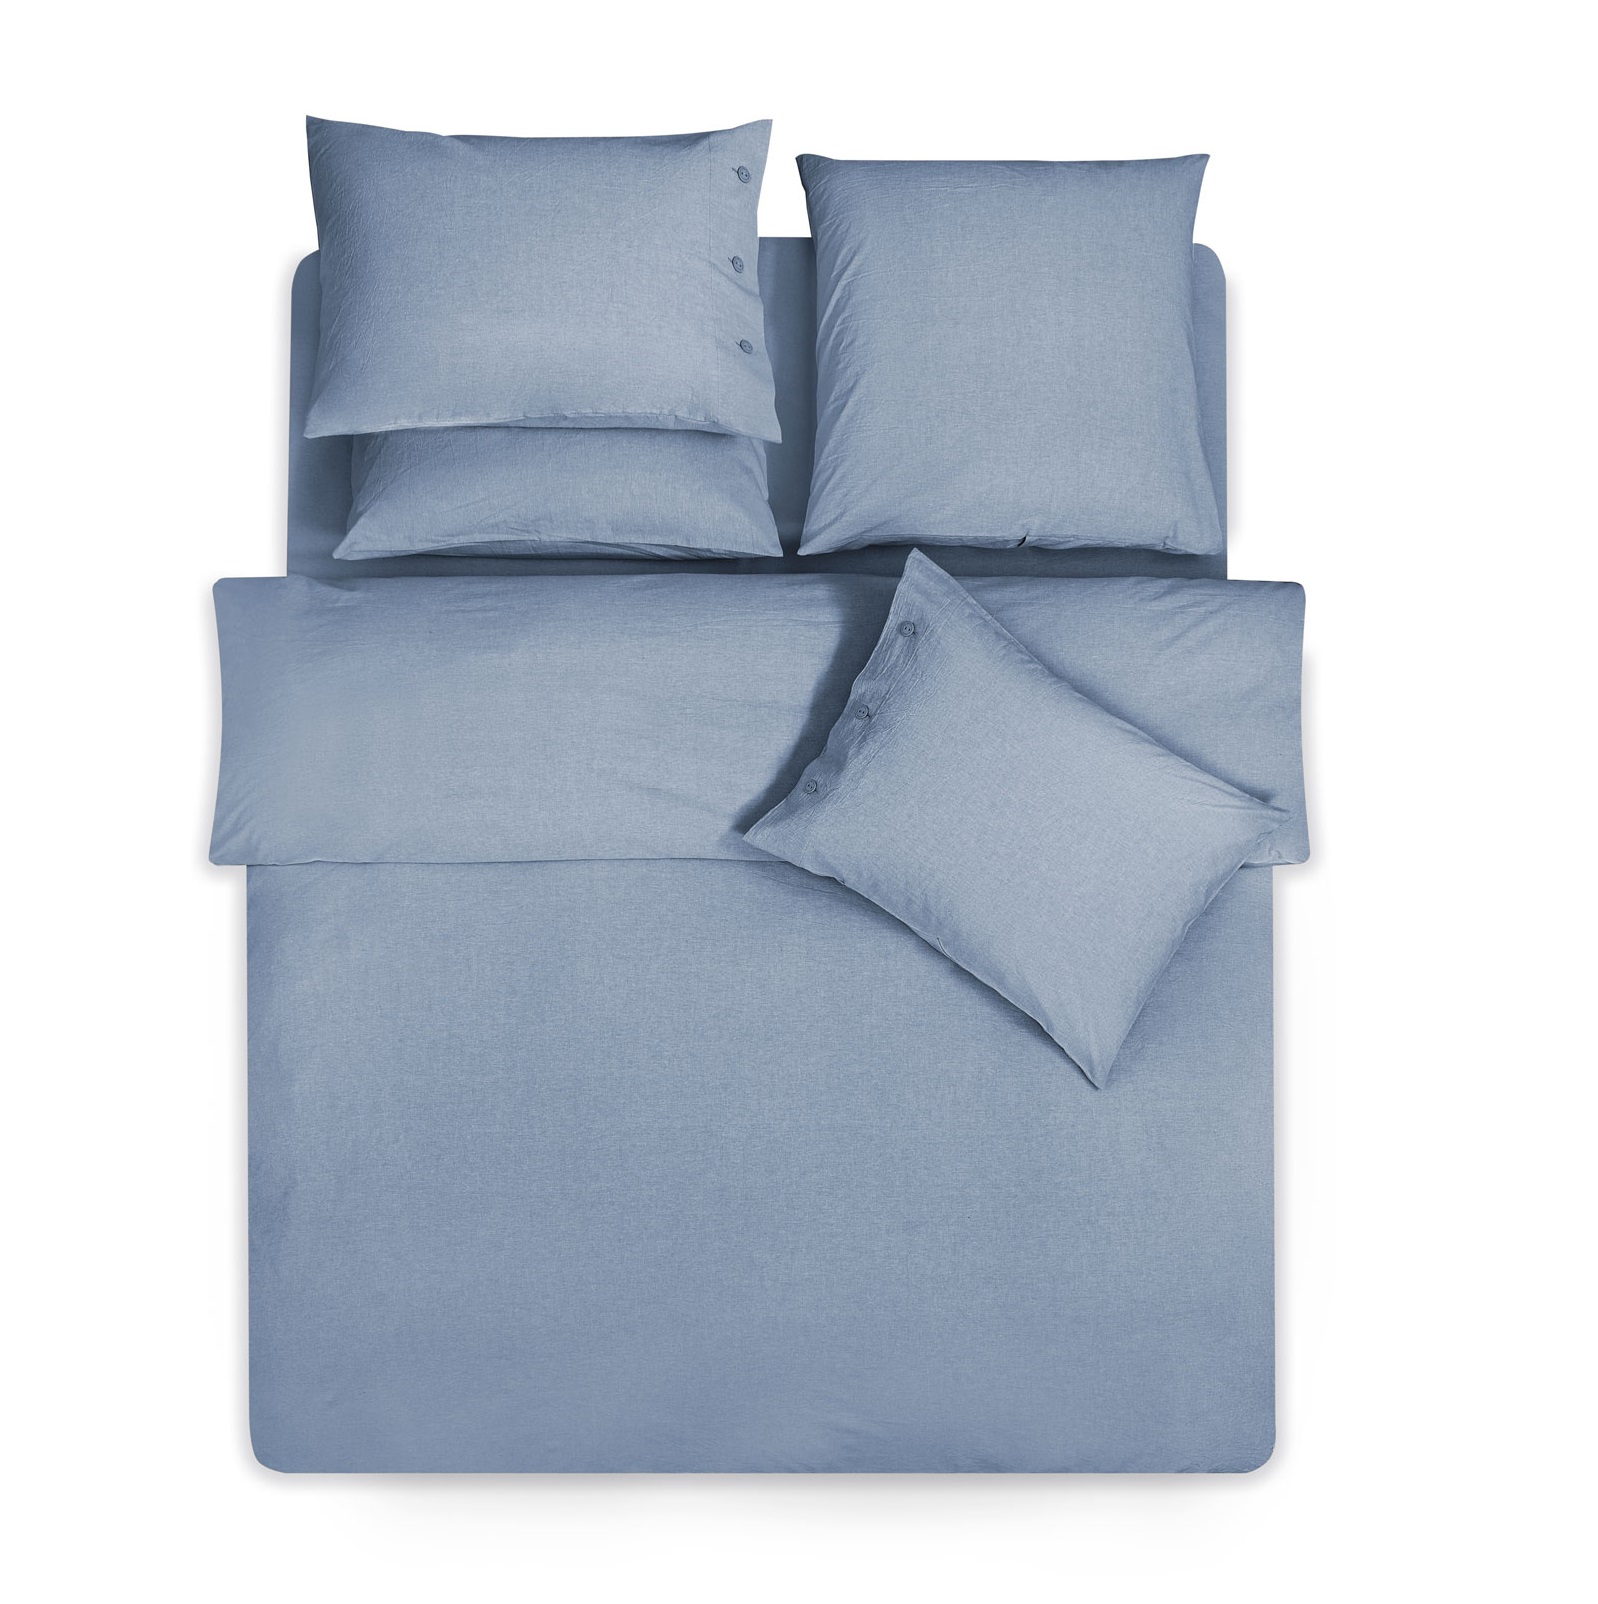 Комплект постельного белья Prime Prive Смоген Семейный/дуэт голубой, размер Семейный/дуэт - фото 4